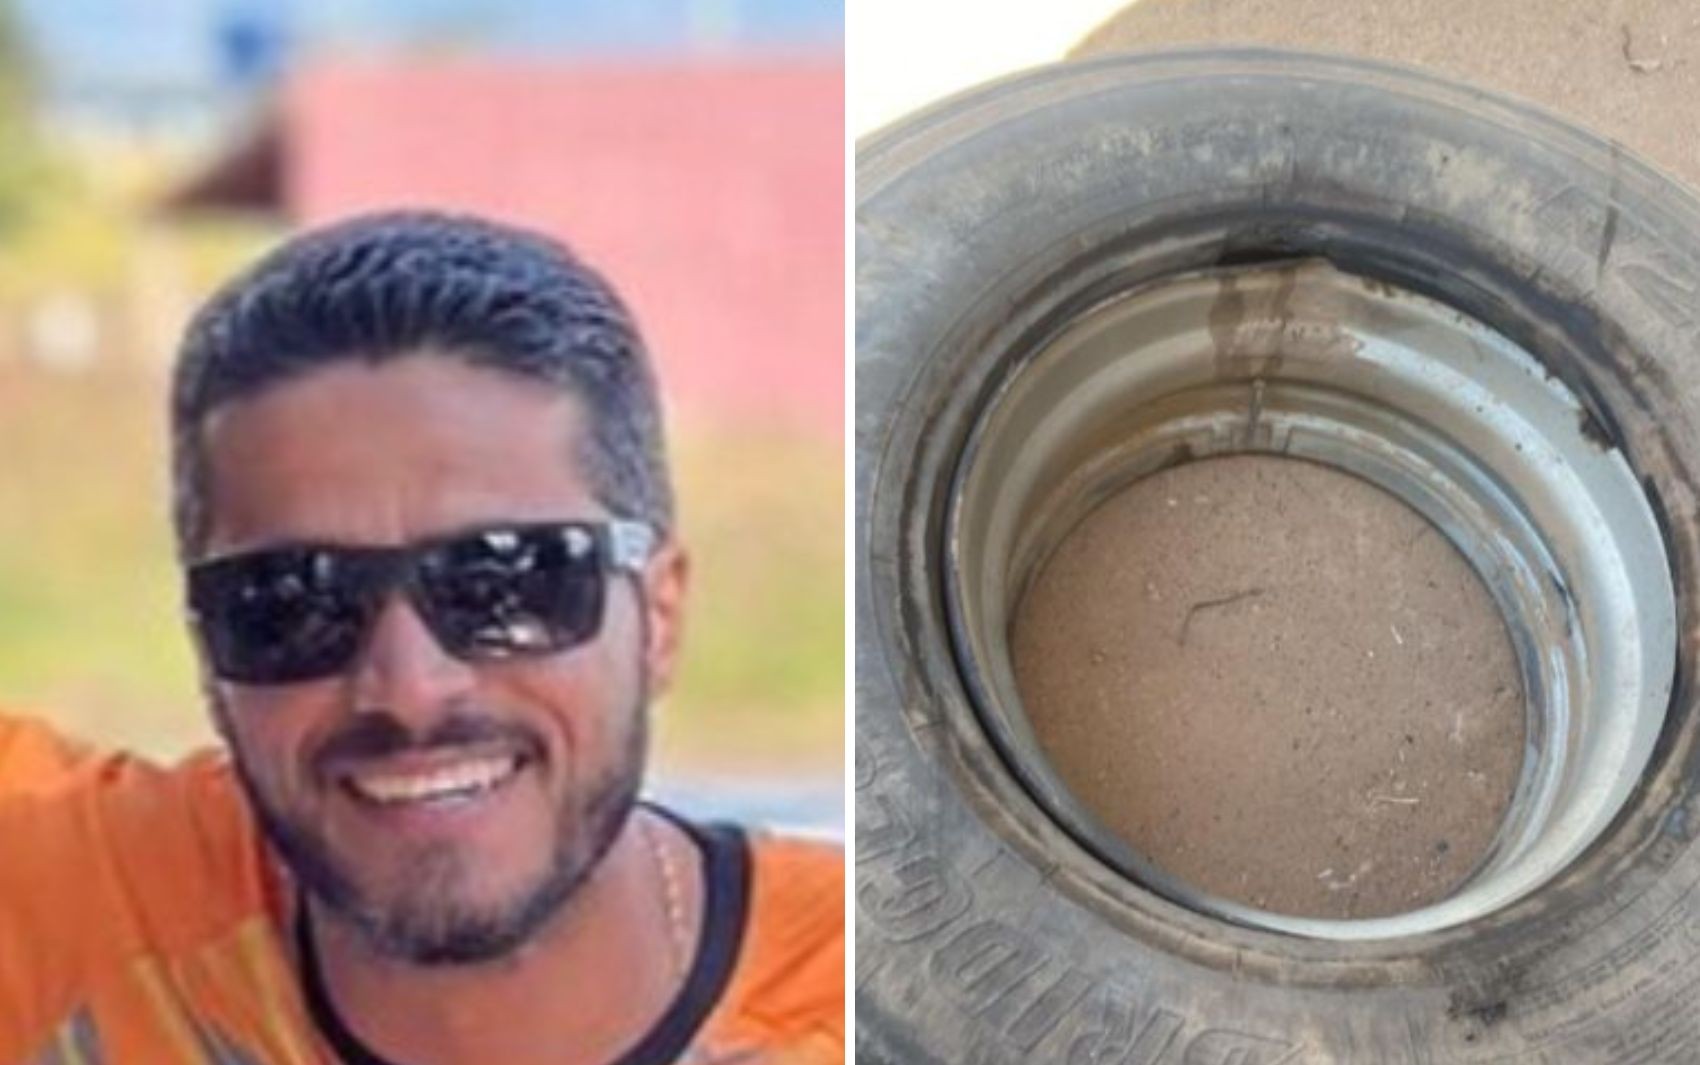 Caminhoneiro morre após pneu explodir e arremessá-lo dentro de borracharia, diz polícia